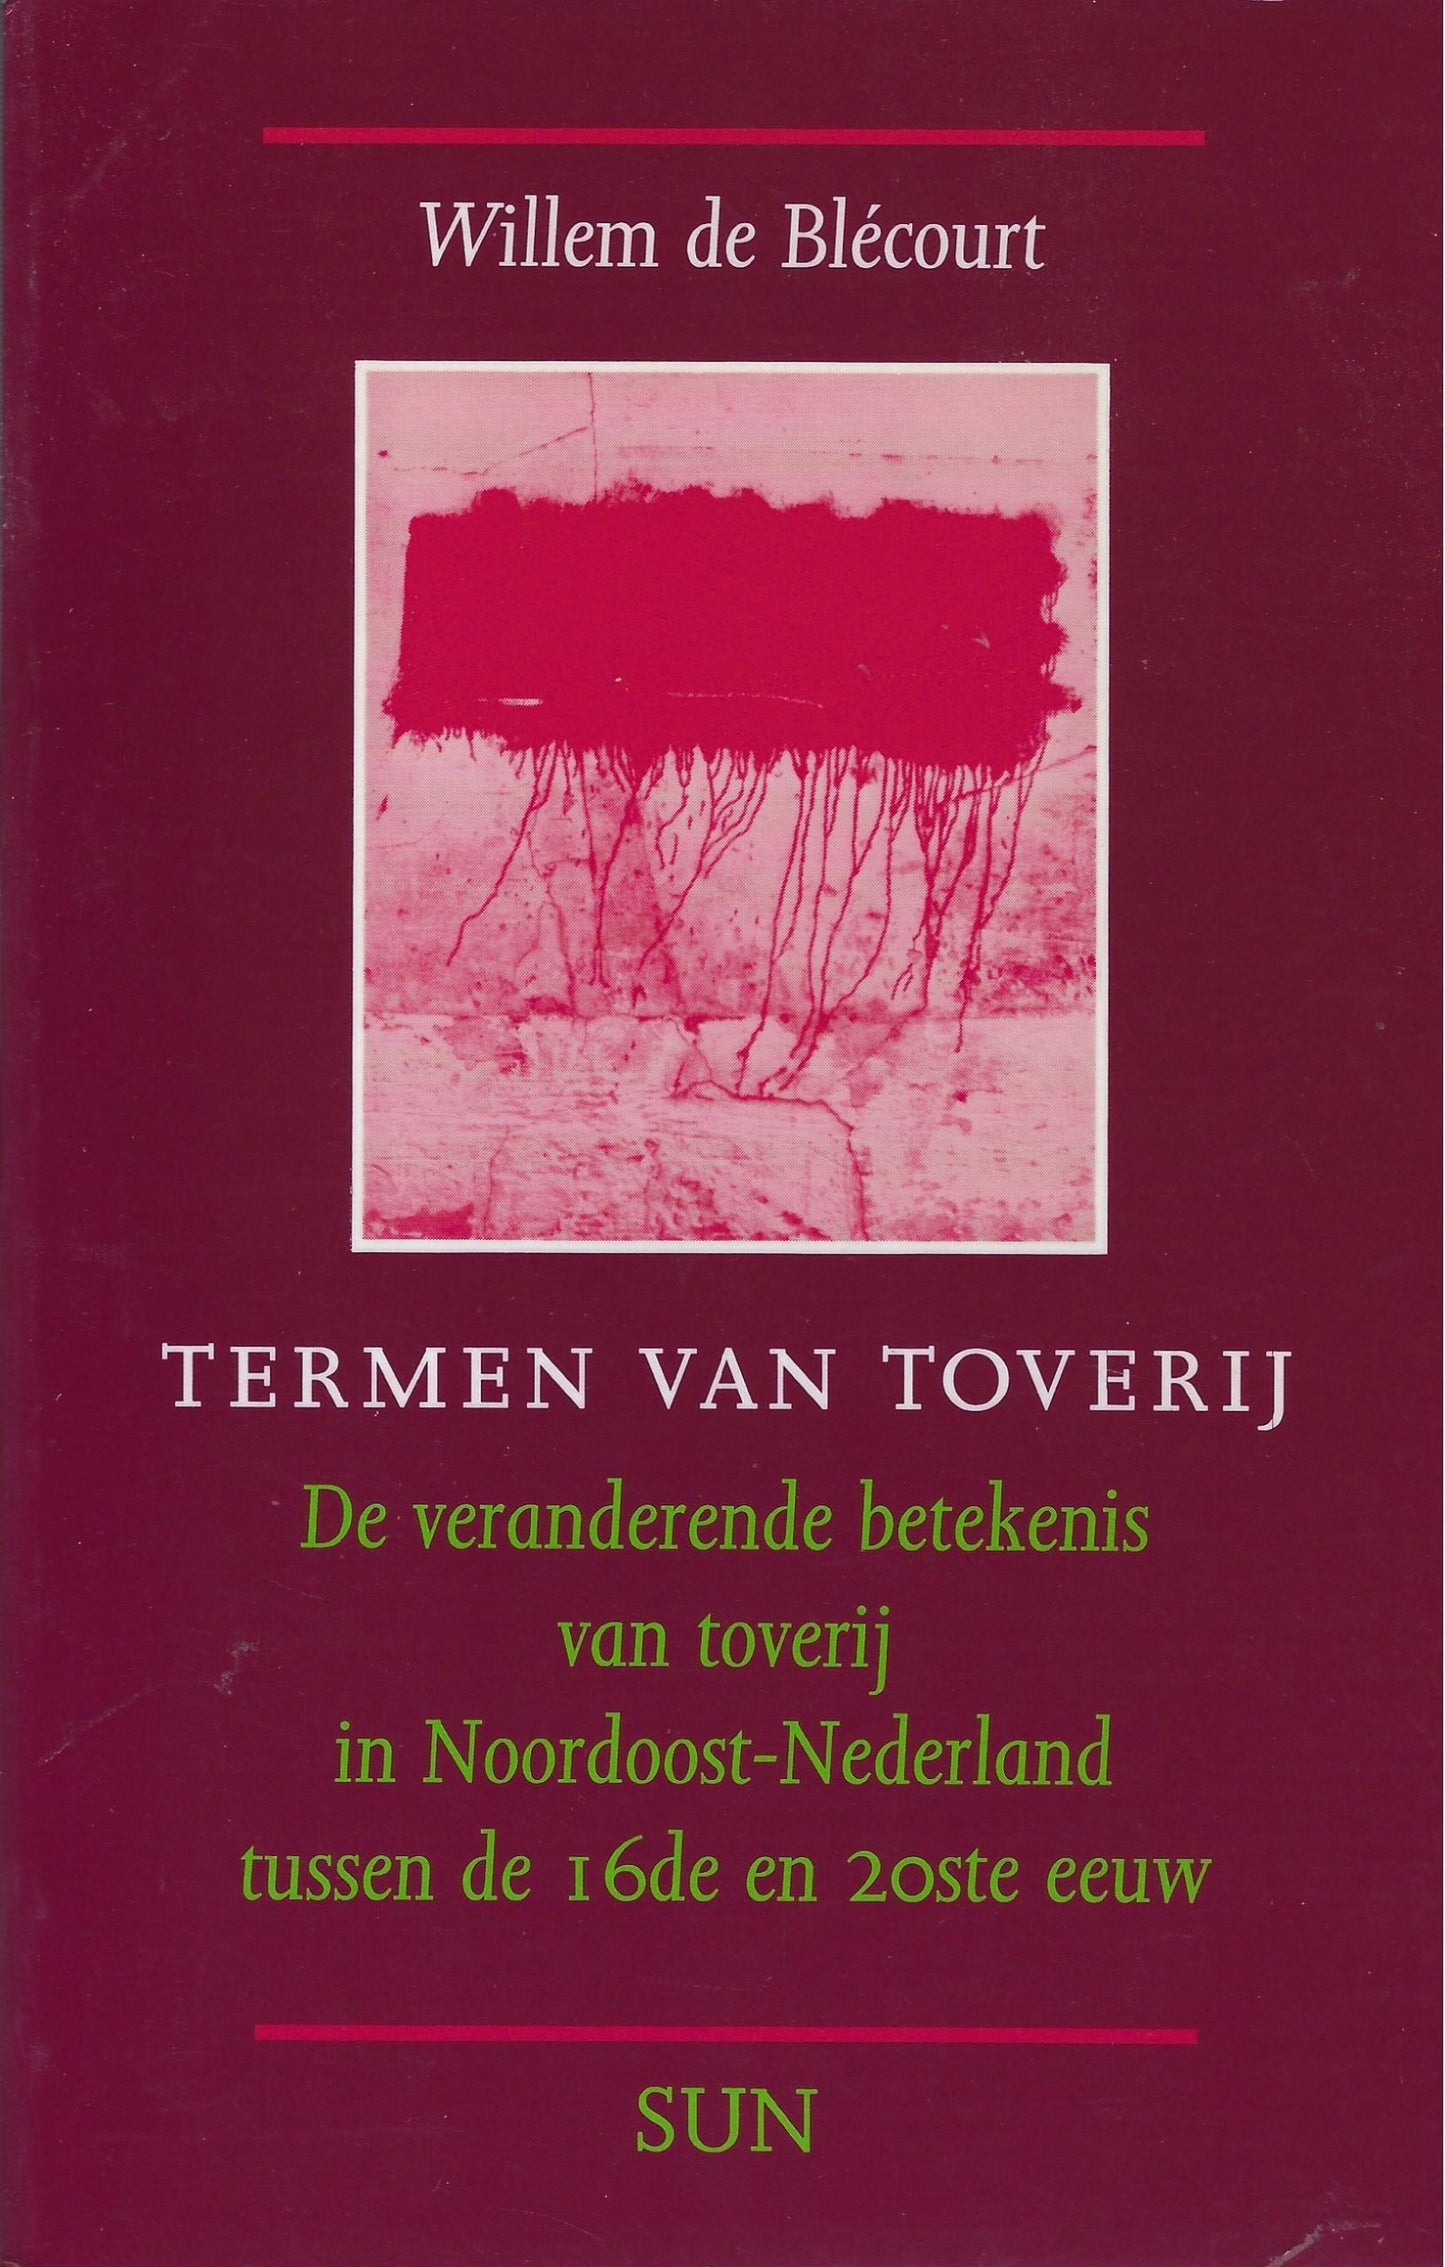 Termen van toverij in Noordoost-Nederland